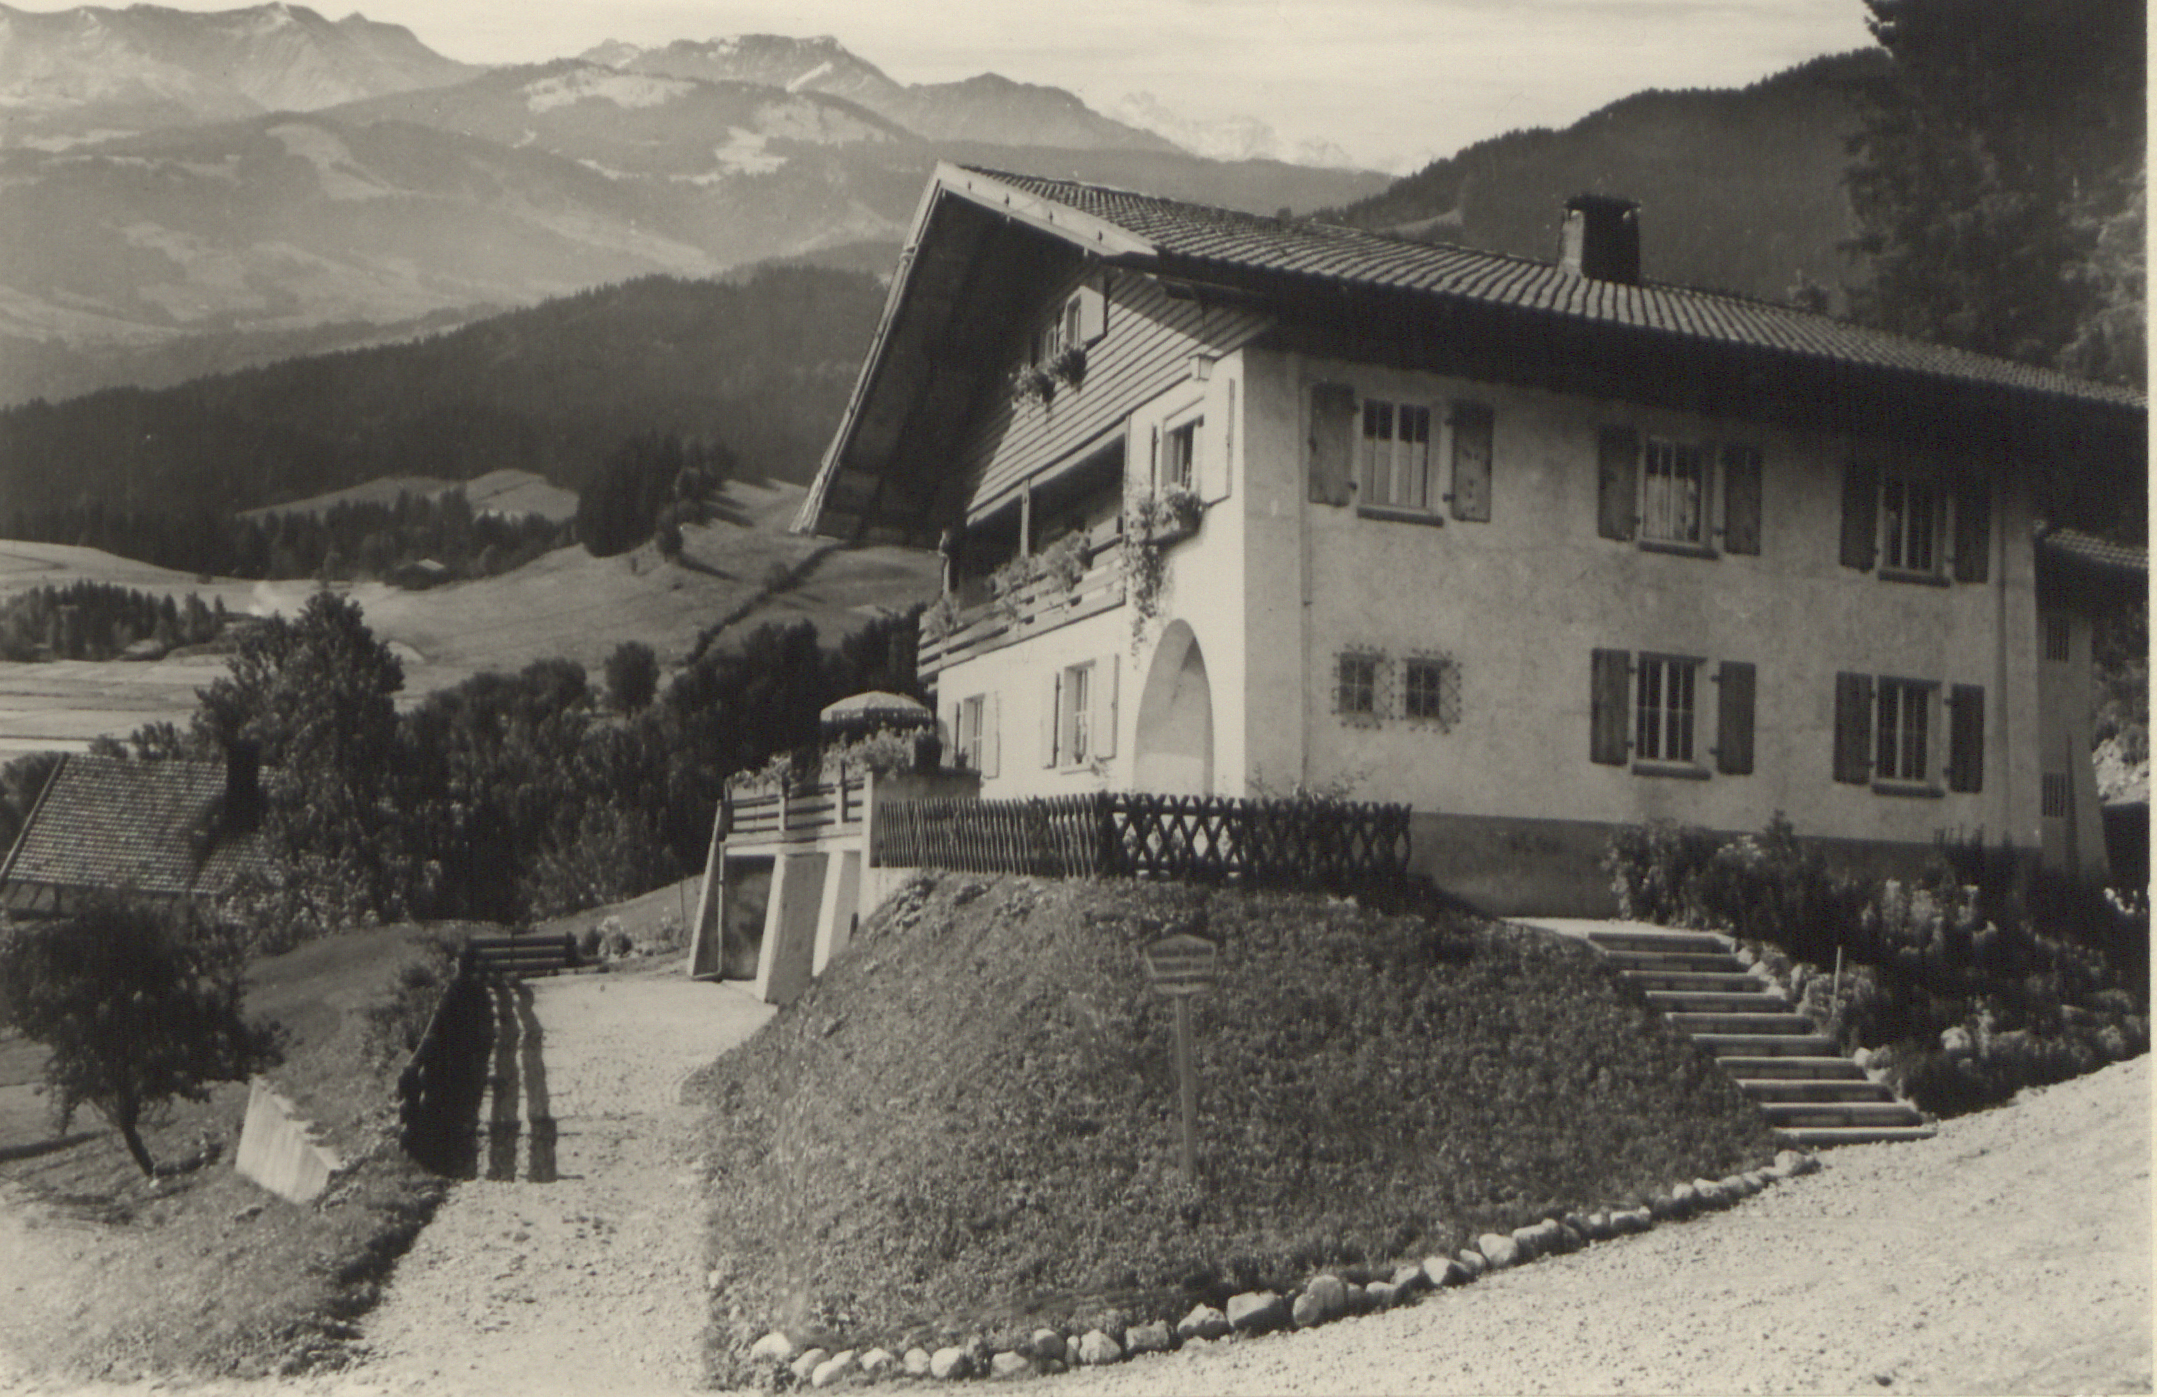  Erholungsheime wie das Kinderheim Bergfreude in Scheidegg befanden sich oft in ländlicher Umgebung. [Quelle: Landeskirchliches Archiv Stuttgart, L 1 Nr. 5185]